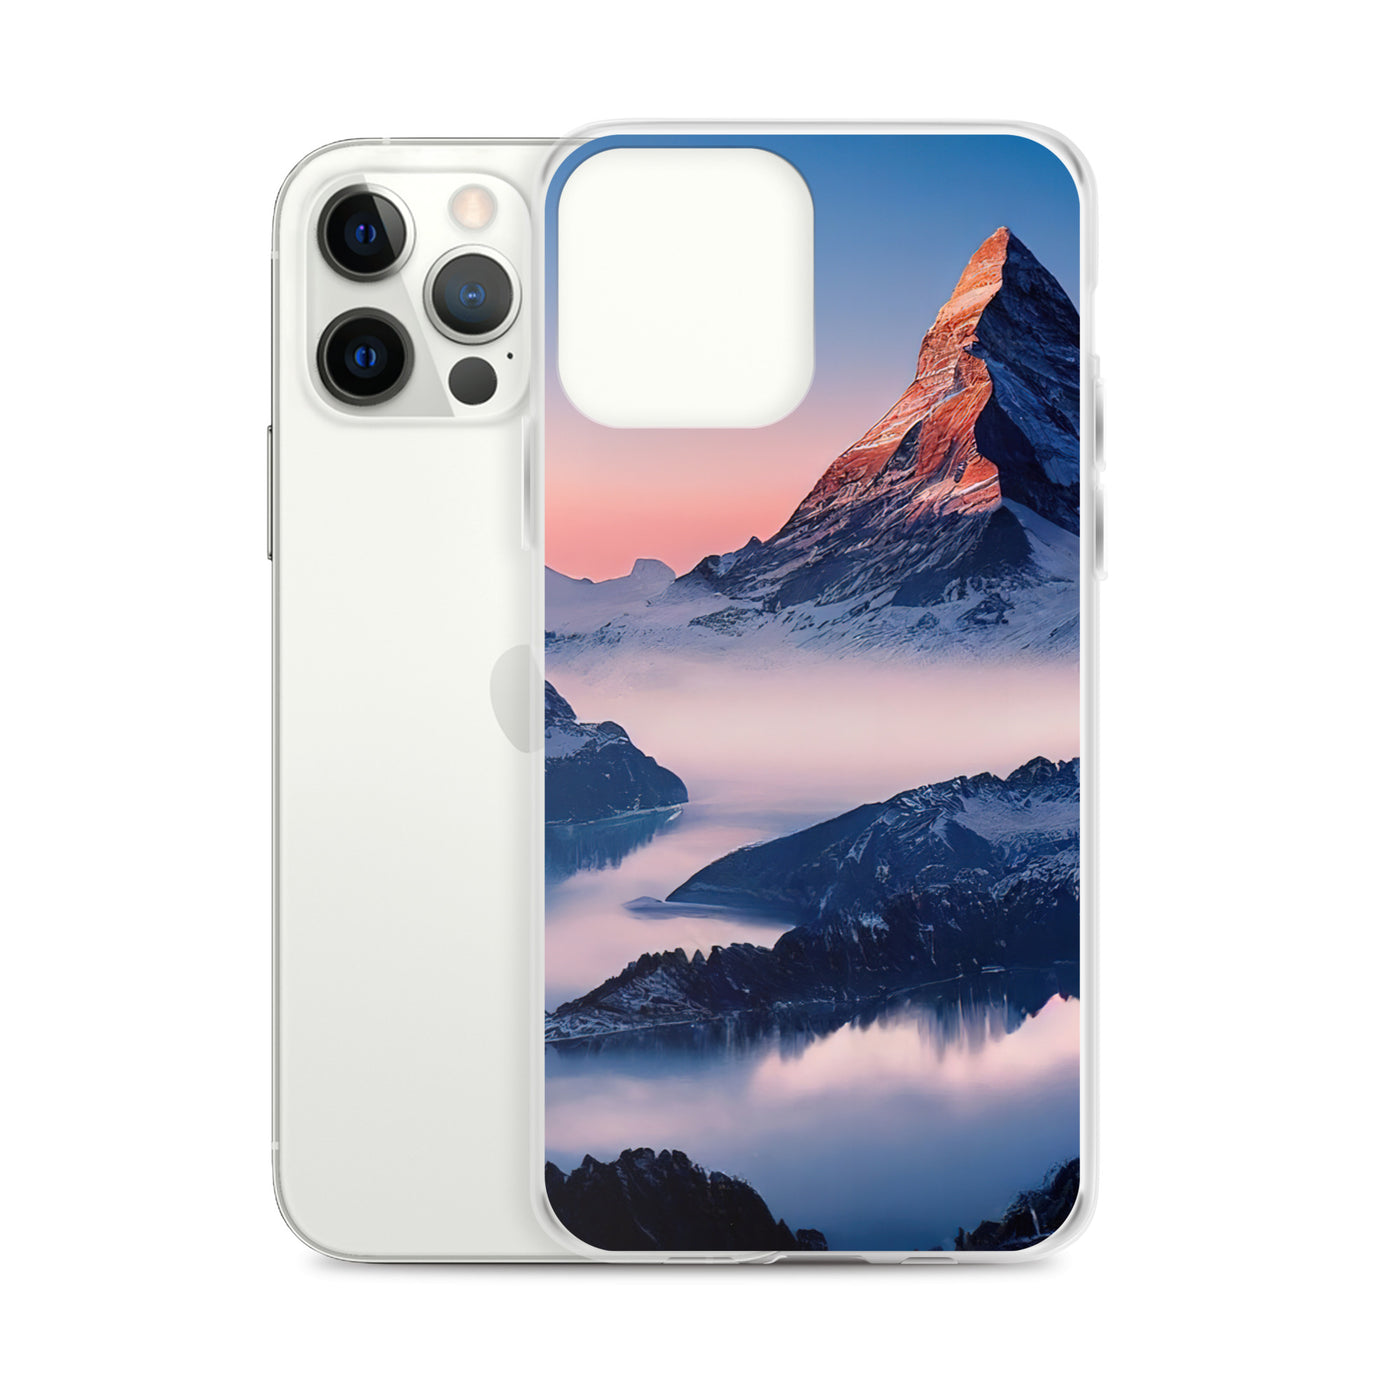 Matternhorn - Nebel - Berglandschaft - Malerei - iPhone Schutzhülle (durchsichtig) berge xxx